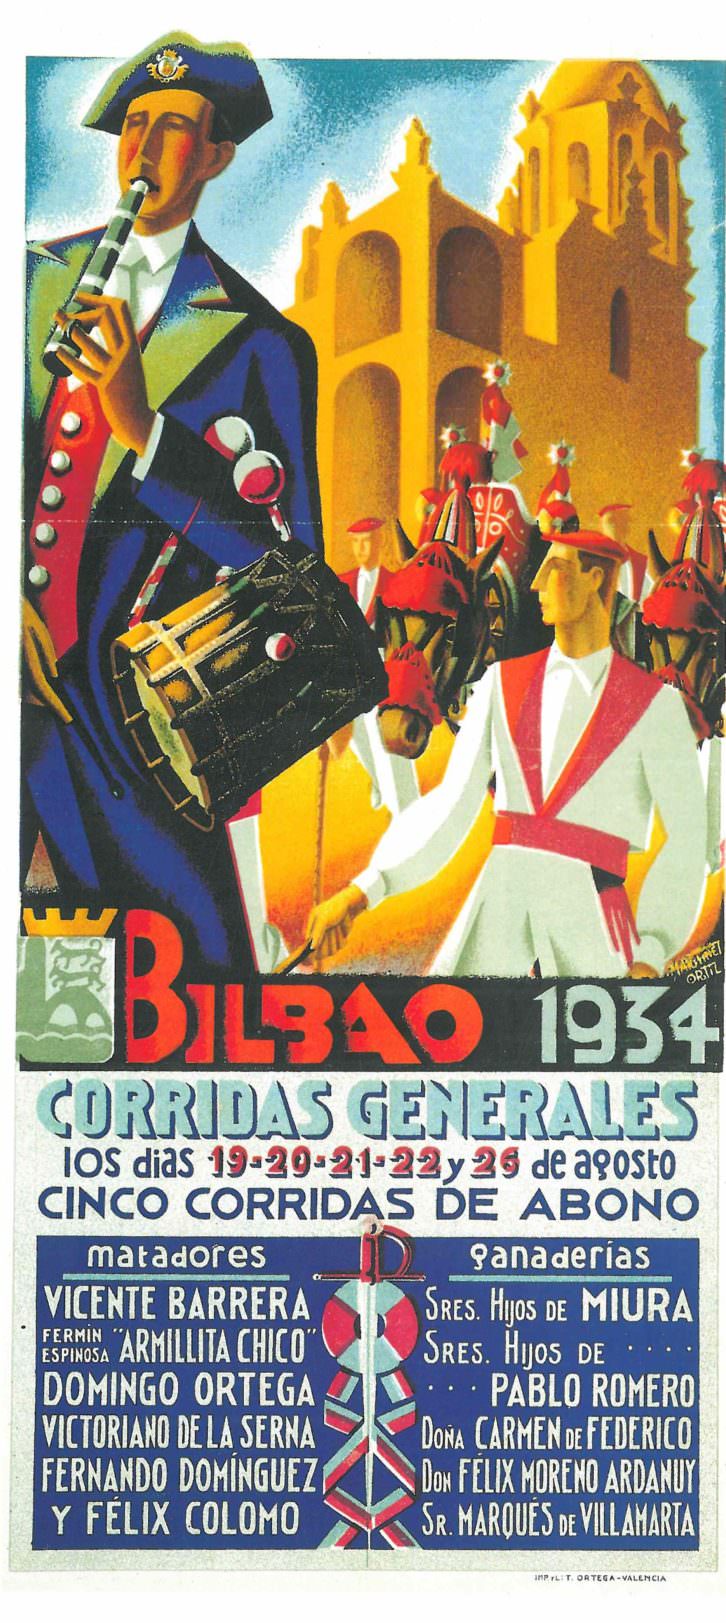 Cartel de Martínez Ortiz para las "Corridas Generales de Bilbao" de 1934. Imagen cortesía de la biblioteca del Museo Taurino de Valencia.